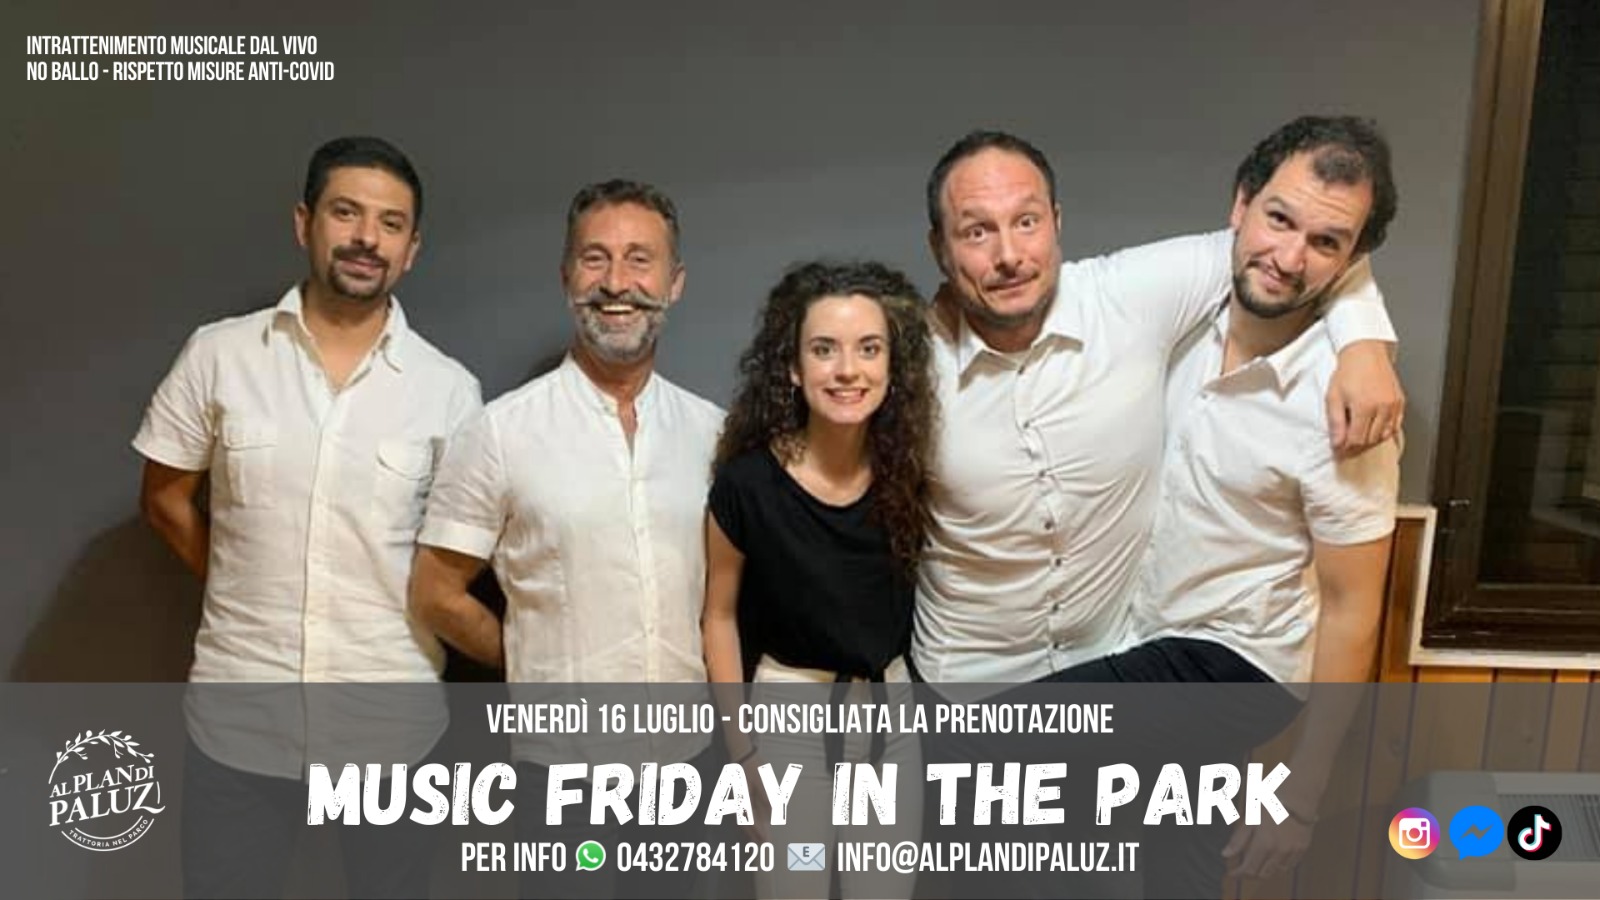 Music Friday in the Park - Trattoria al Plan di Paluz - EventiFVG.it